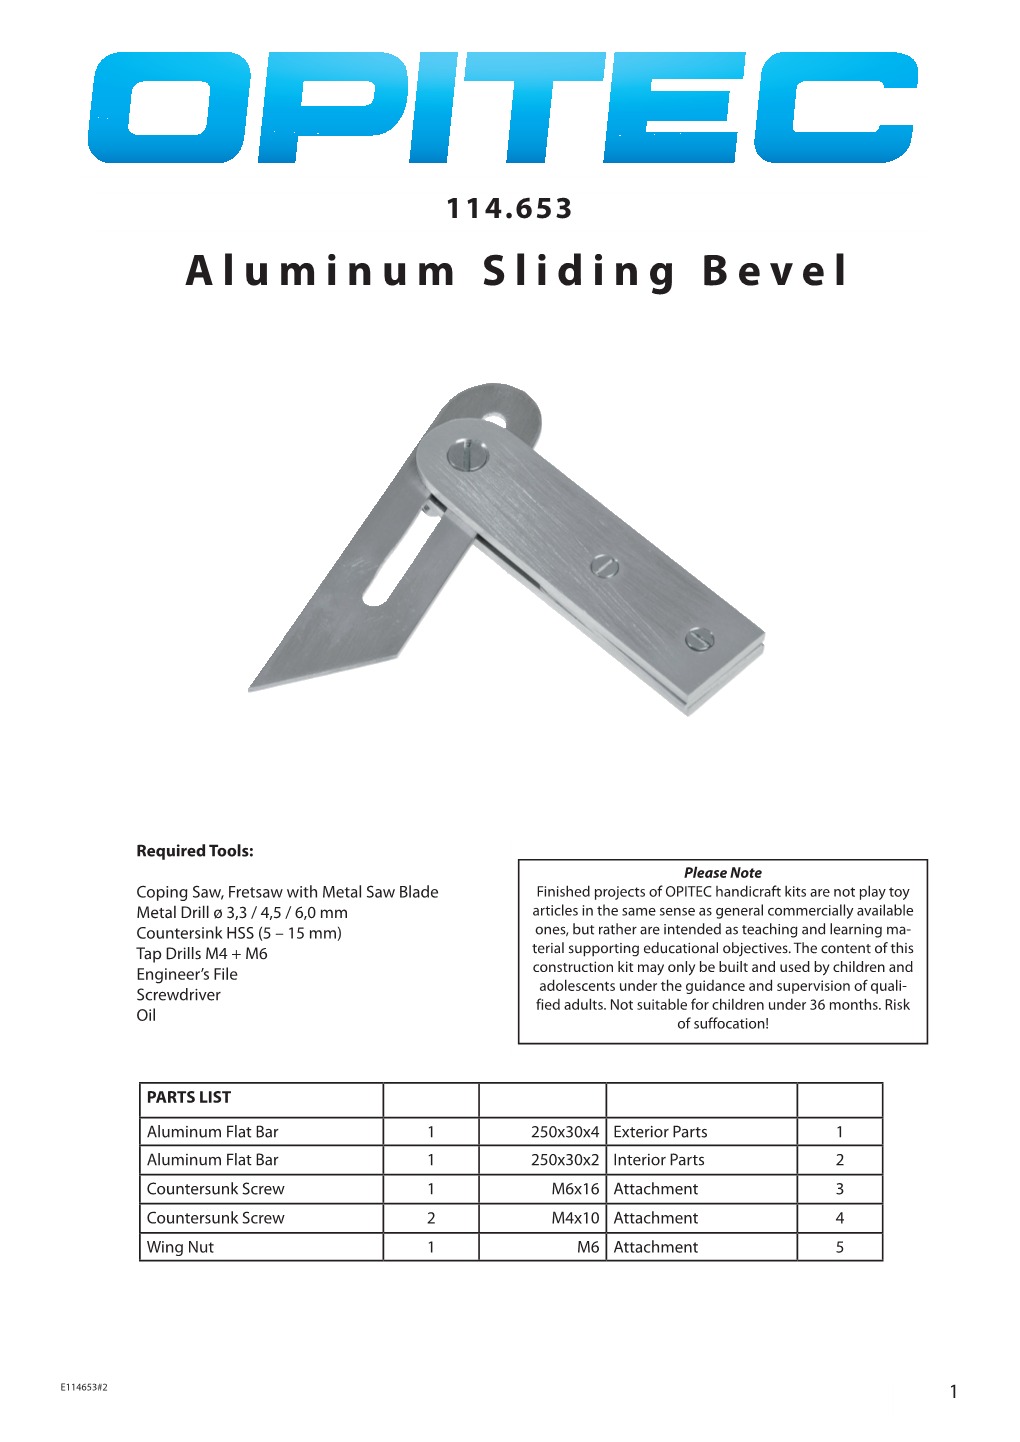 Aluminum Sliding Bevel